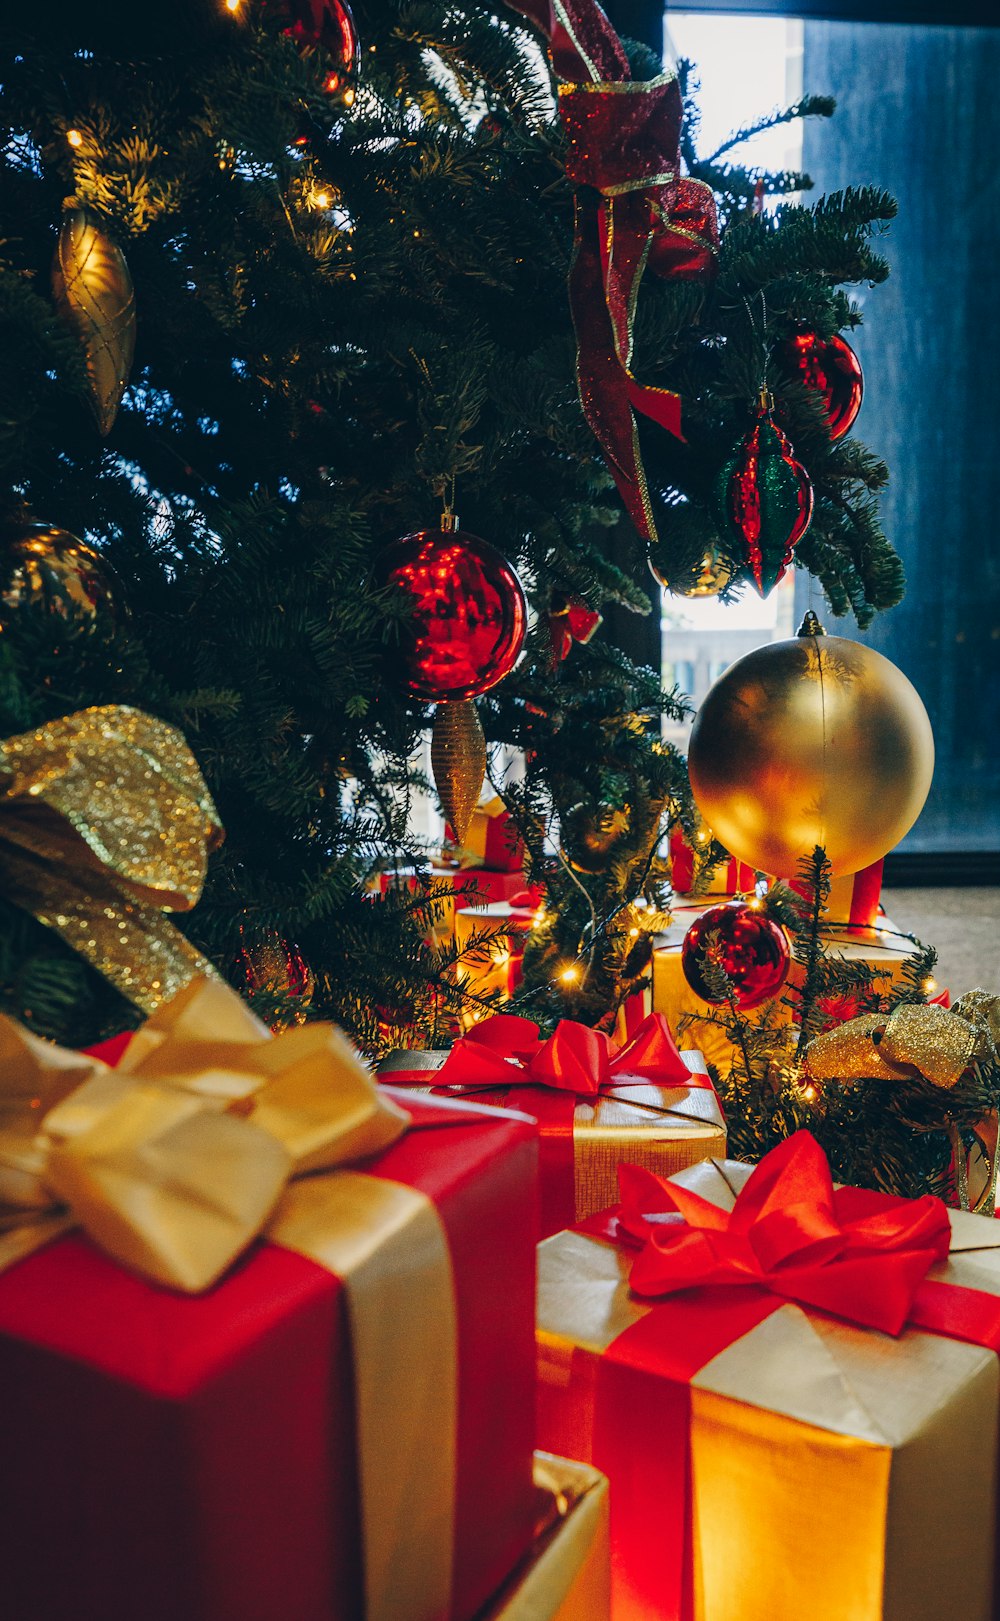 grüner Weihnachtsbaum mit Dekorationen und Geschenkboxen auf dem Boden